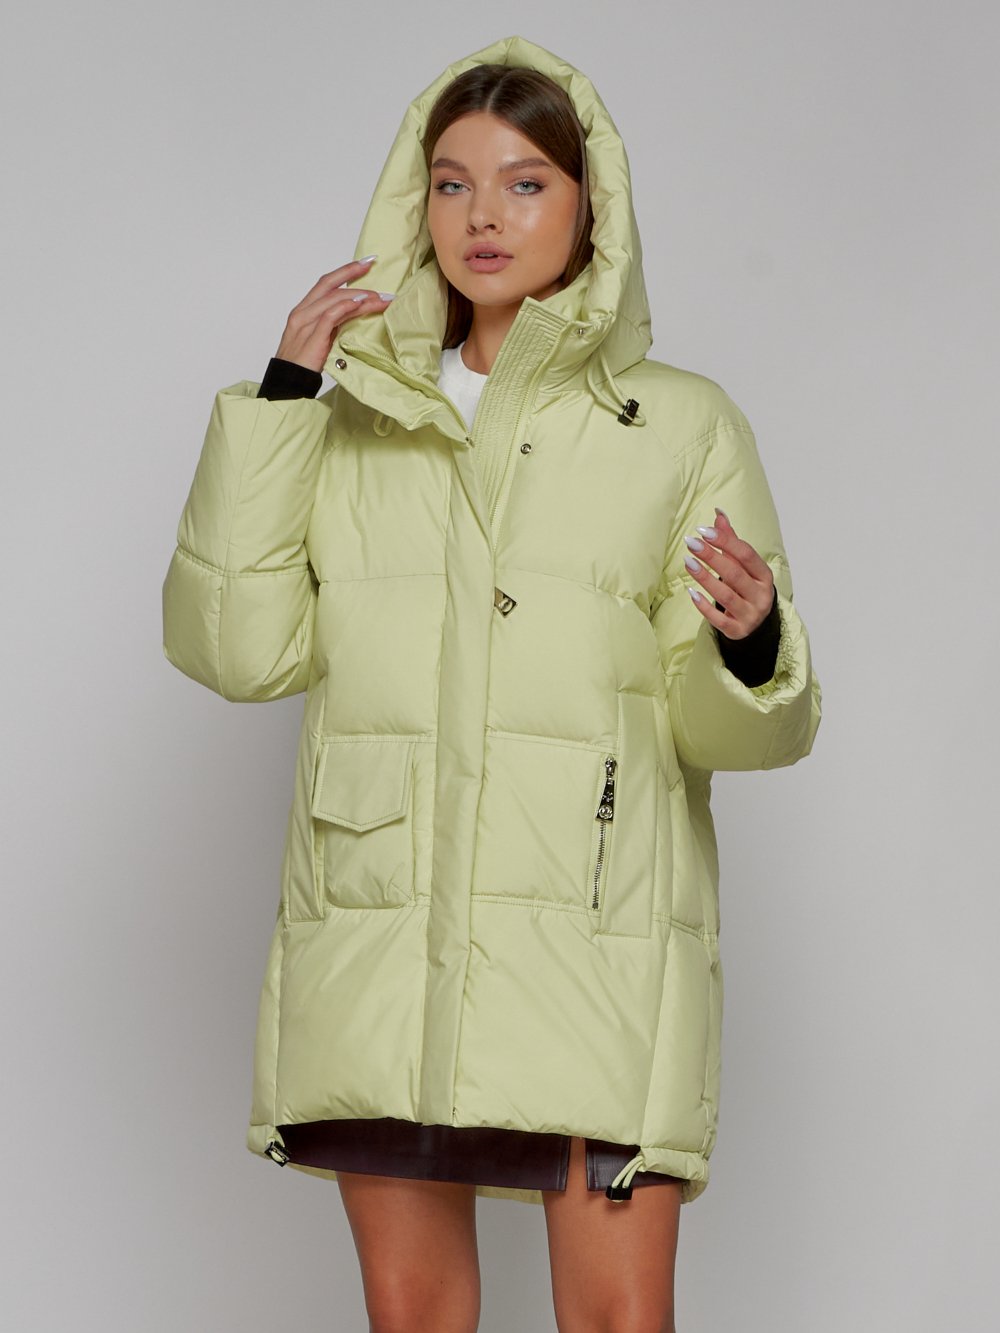 Купить куртку женскую оптом от производителя недорого в Москве 51122Sl 1